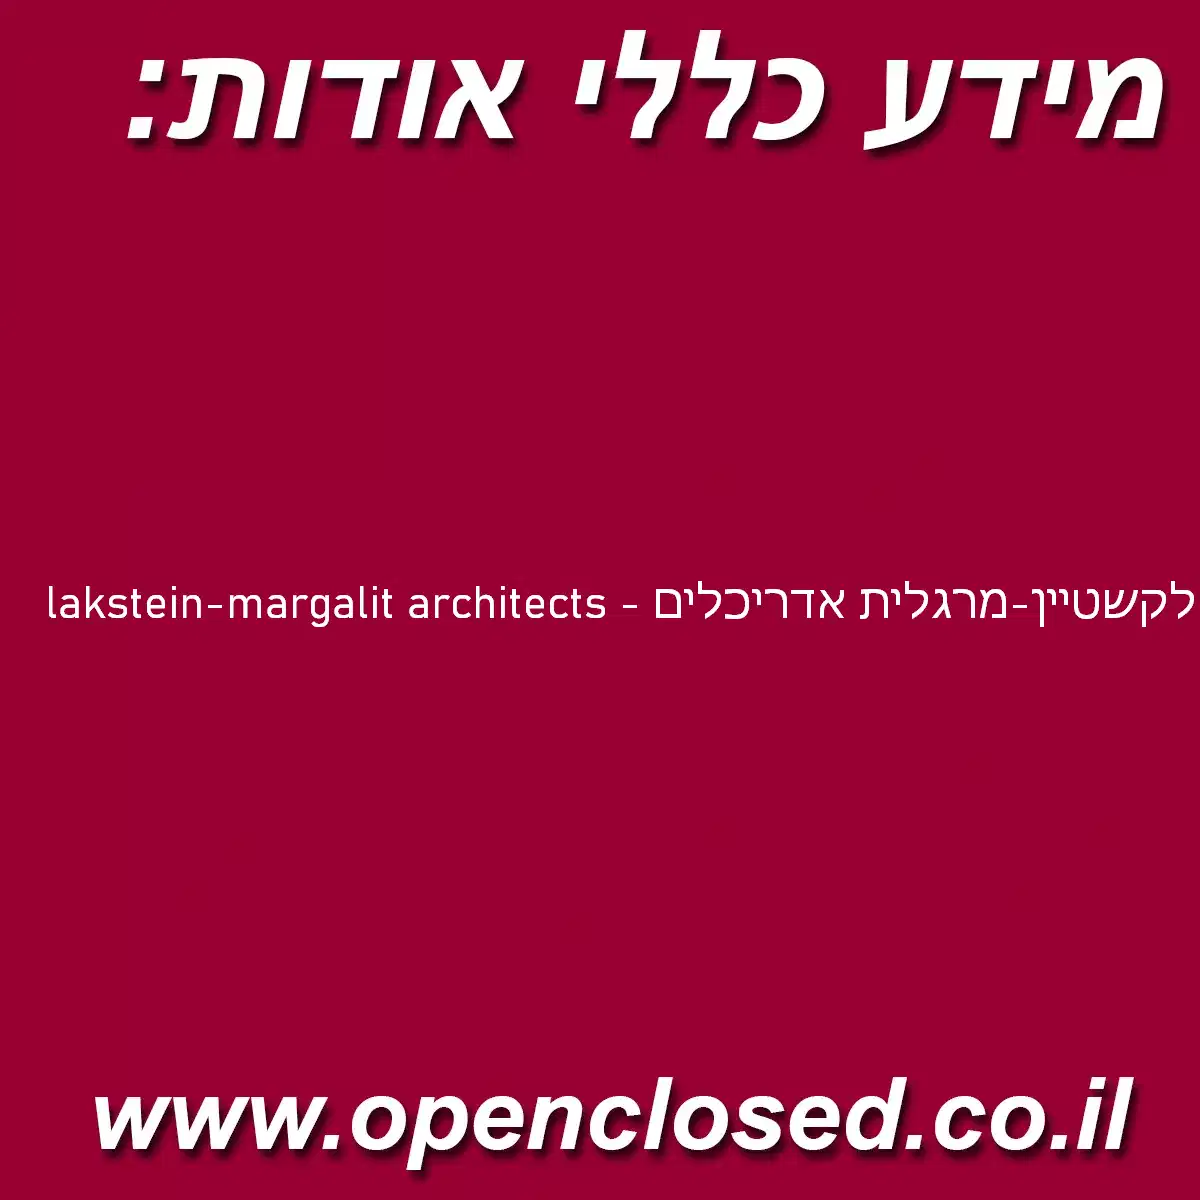 lakstein-margalit architects – לקשטיין-מרגלית אדריכלים